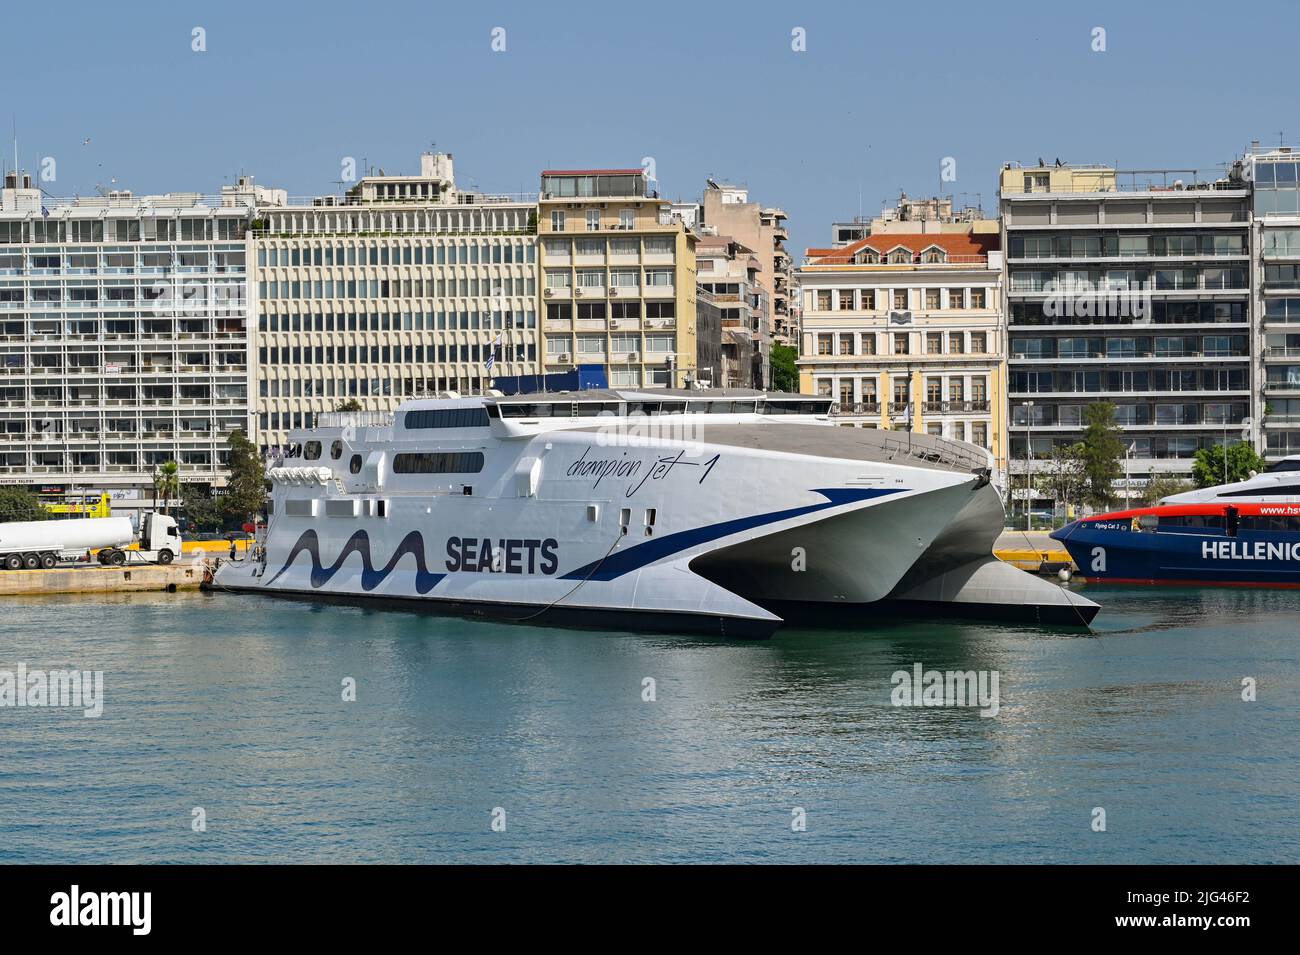 Athen, Griechenland - 2022. Mai: Doppelrumpf-Hochgeschwindigkeitsfähre Champion Jet liegt im Hafen von Piräus, nachdem er von einer der griechischen Inseln aus angekommen ist. Stockfoto